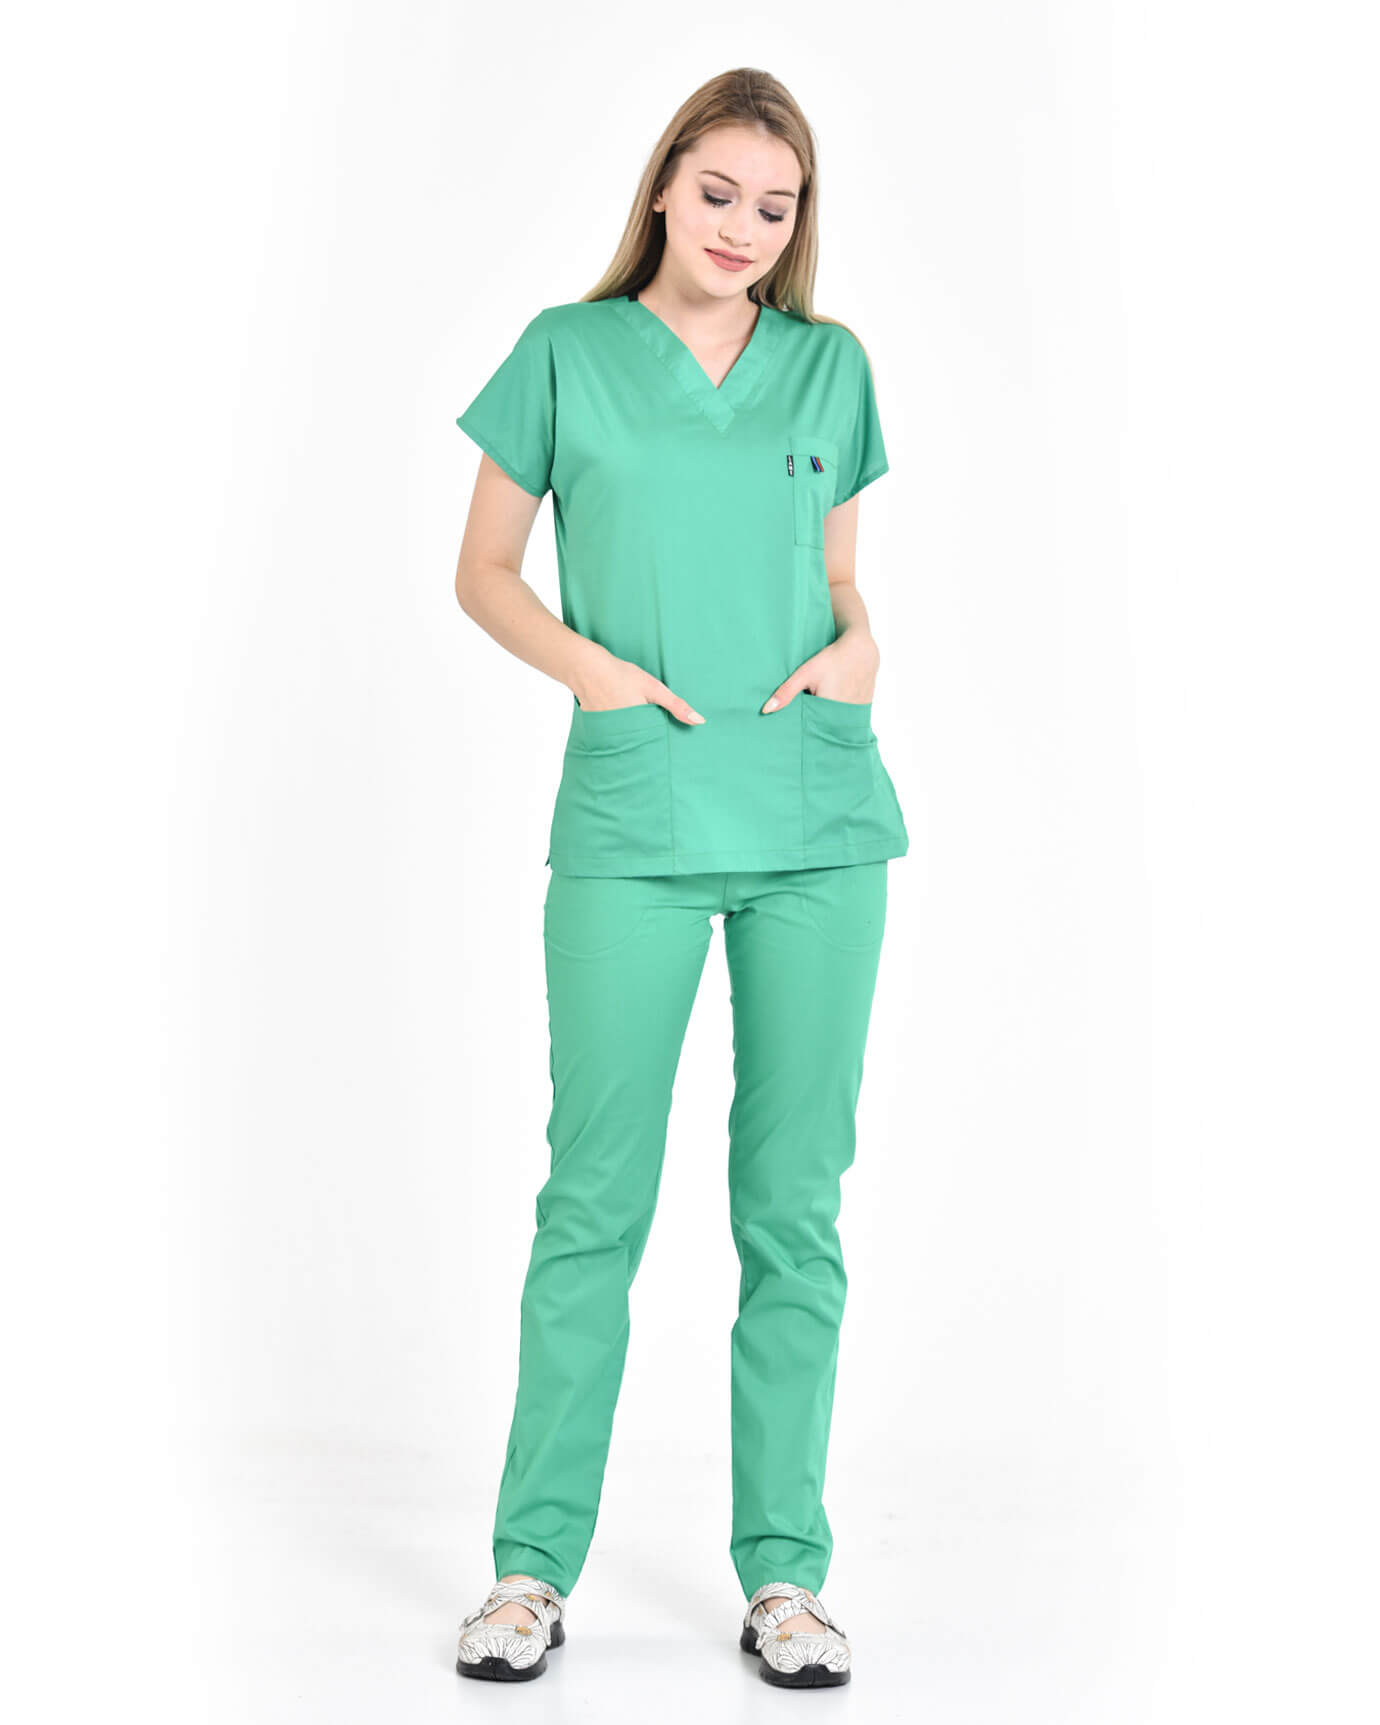 Kadın %100 Pamuk Likralı Benetton Yeşili Doktor ve Hemşire Forması Takımı